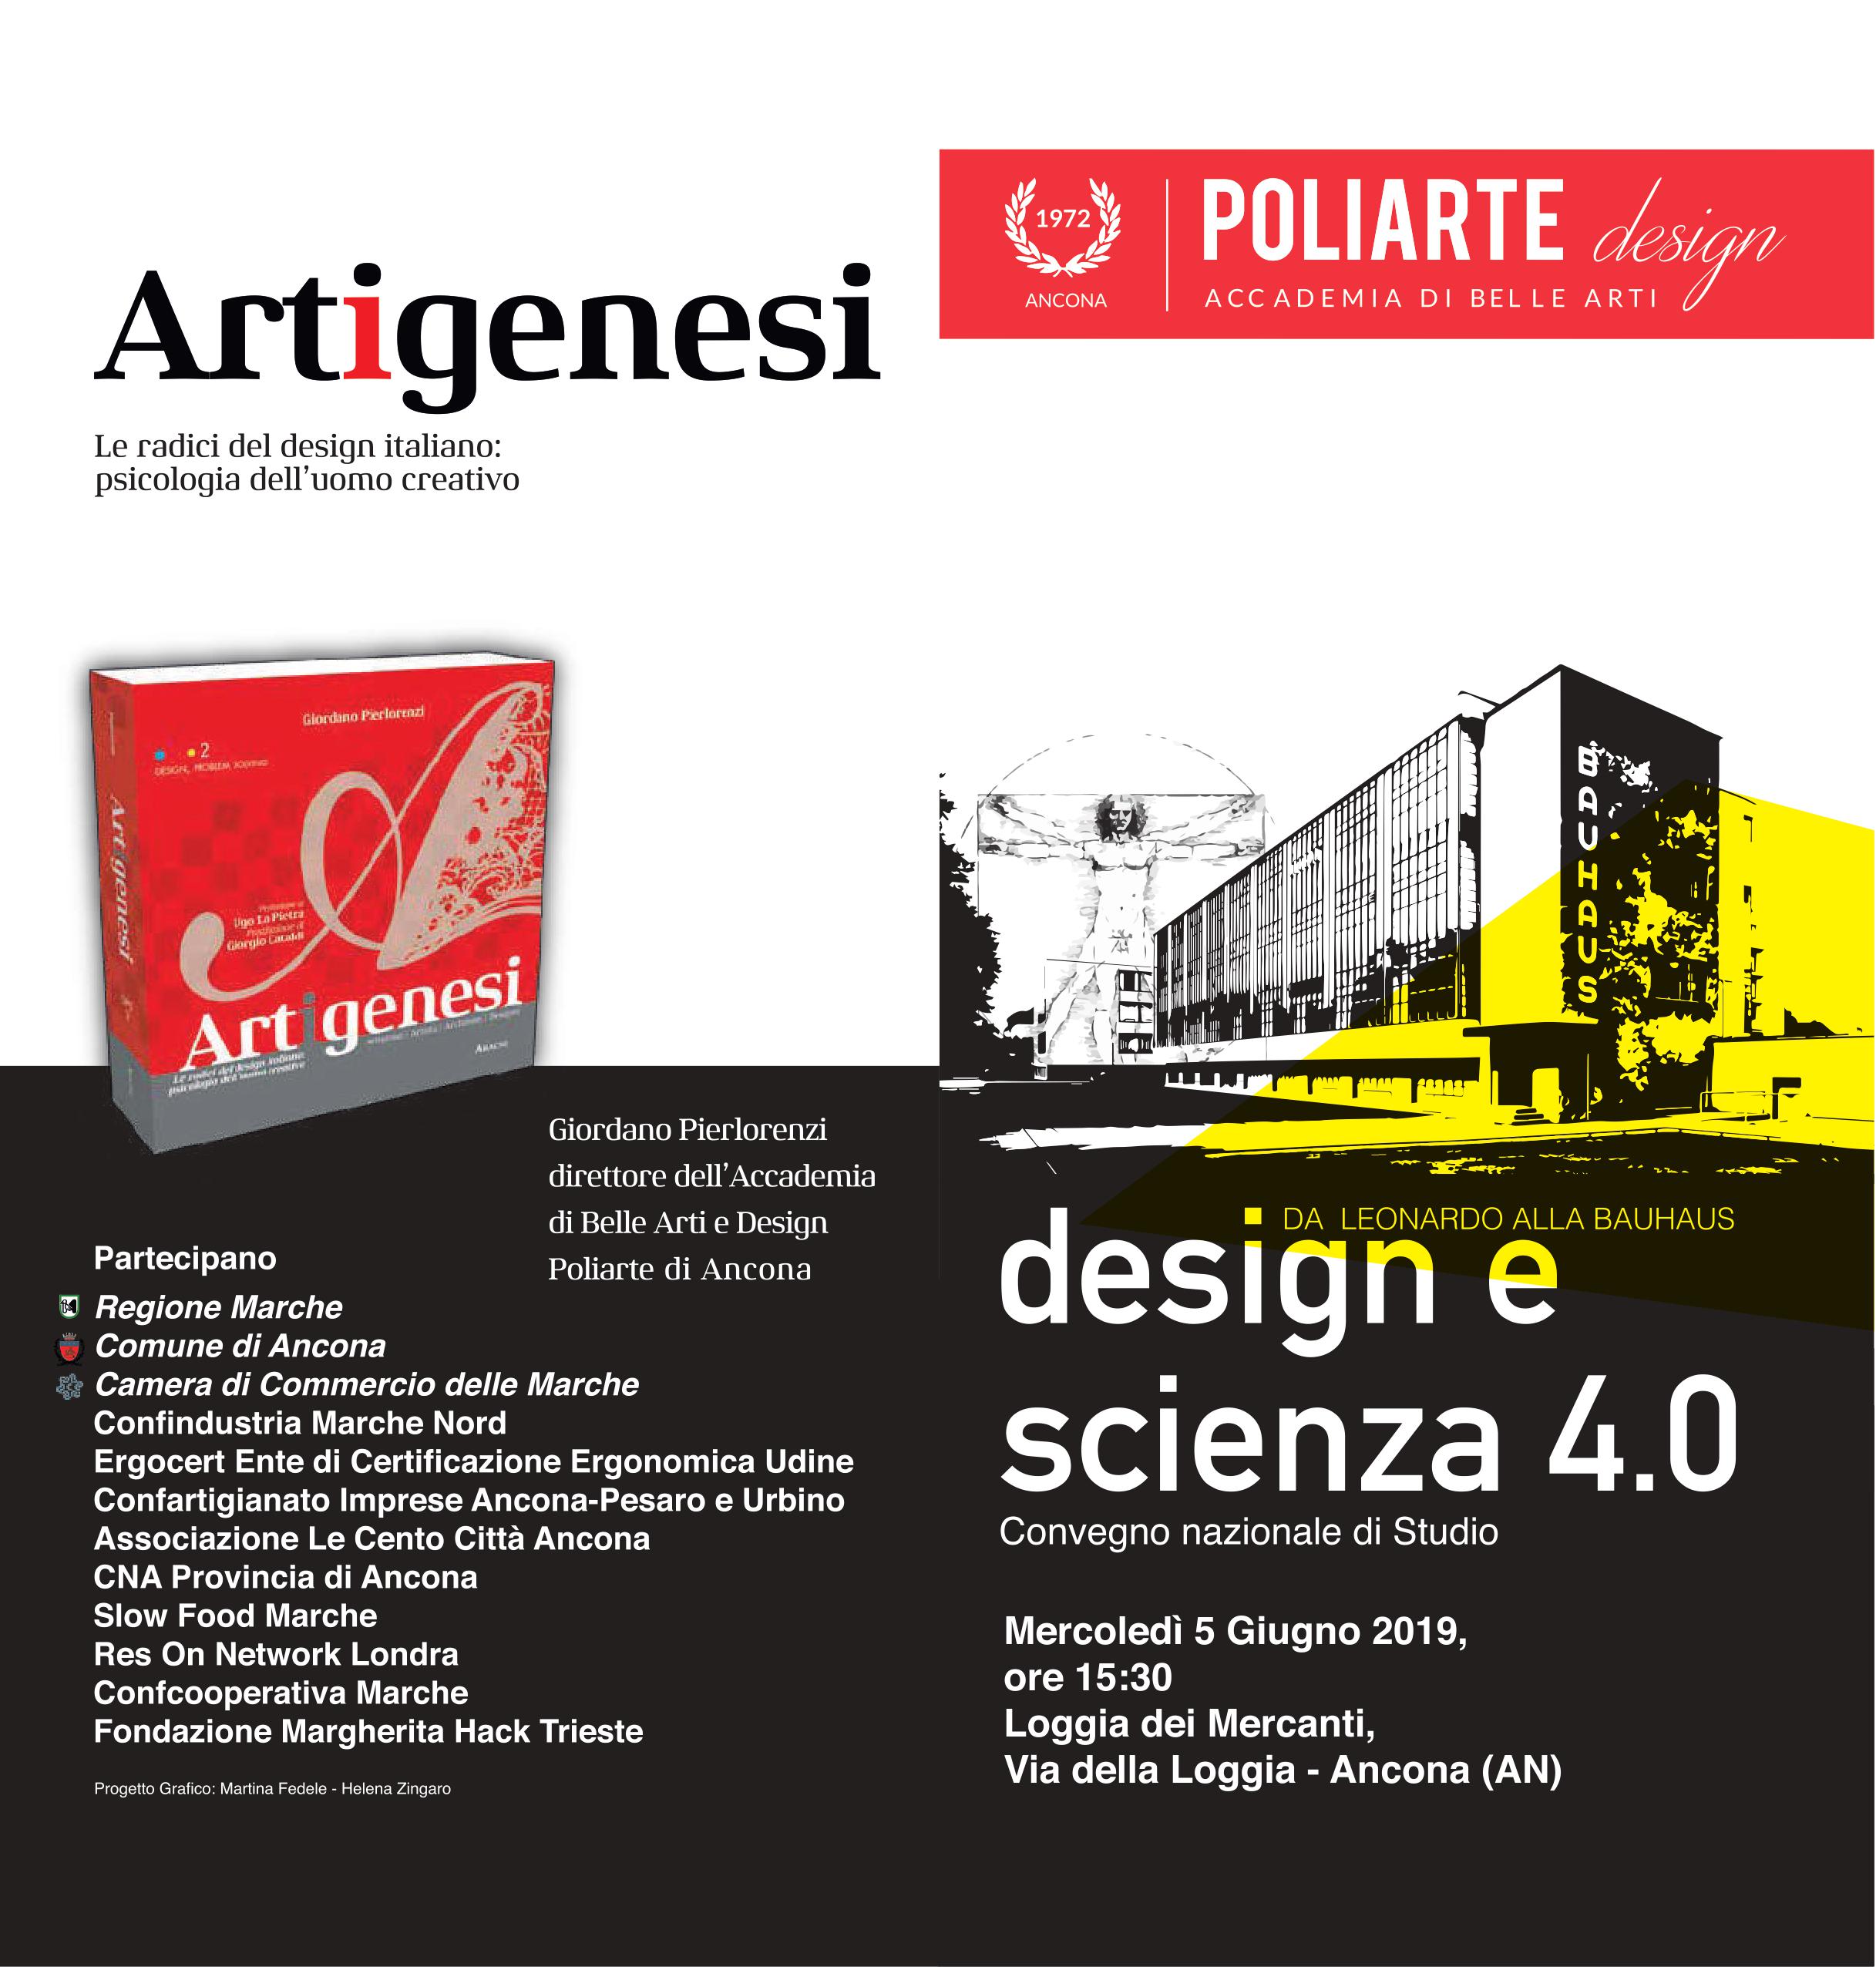 Convegno Nazionale di Studio Da Leonardo alla Bauhaus: design e scienza  4.0